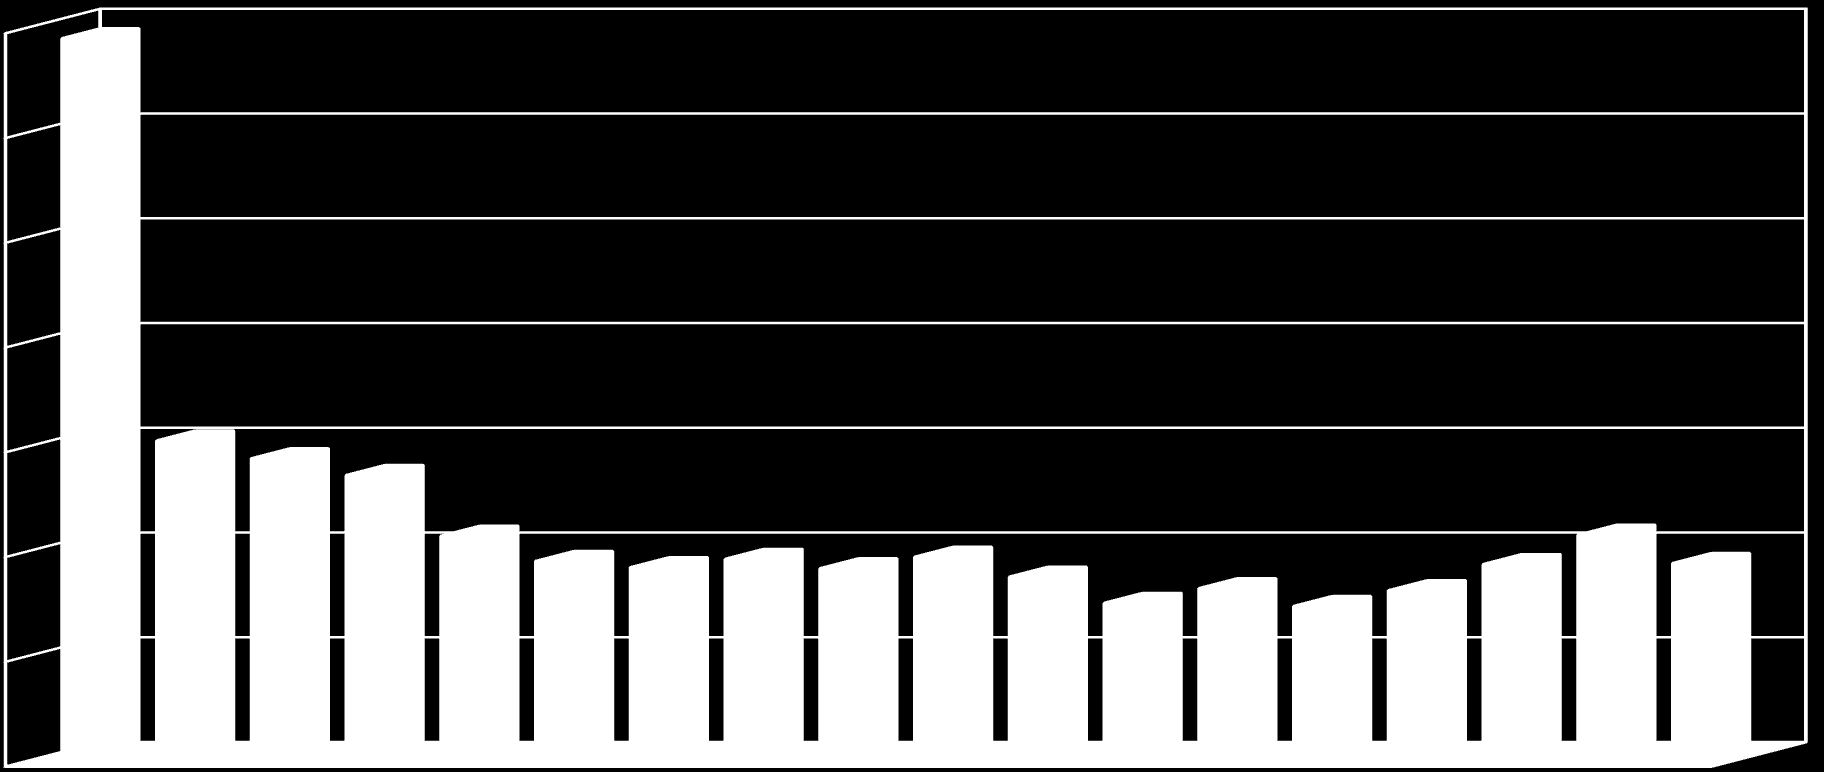 Kórlefolyás - a szérum kreatinin értékek változása 2003-2012 között 700 umol/l 600 500 400 300 200 100 0 2003.nov. 2004.jan. márc.